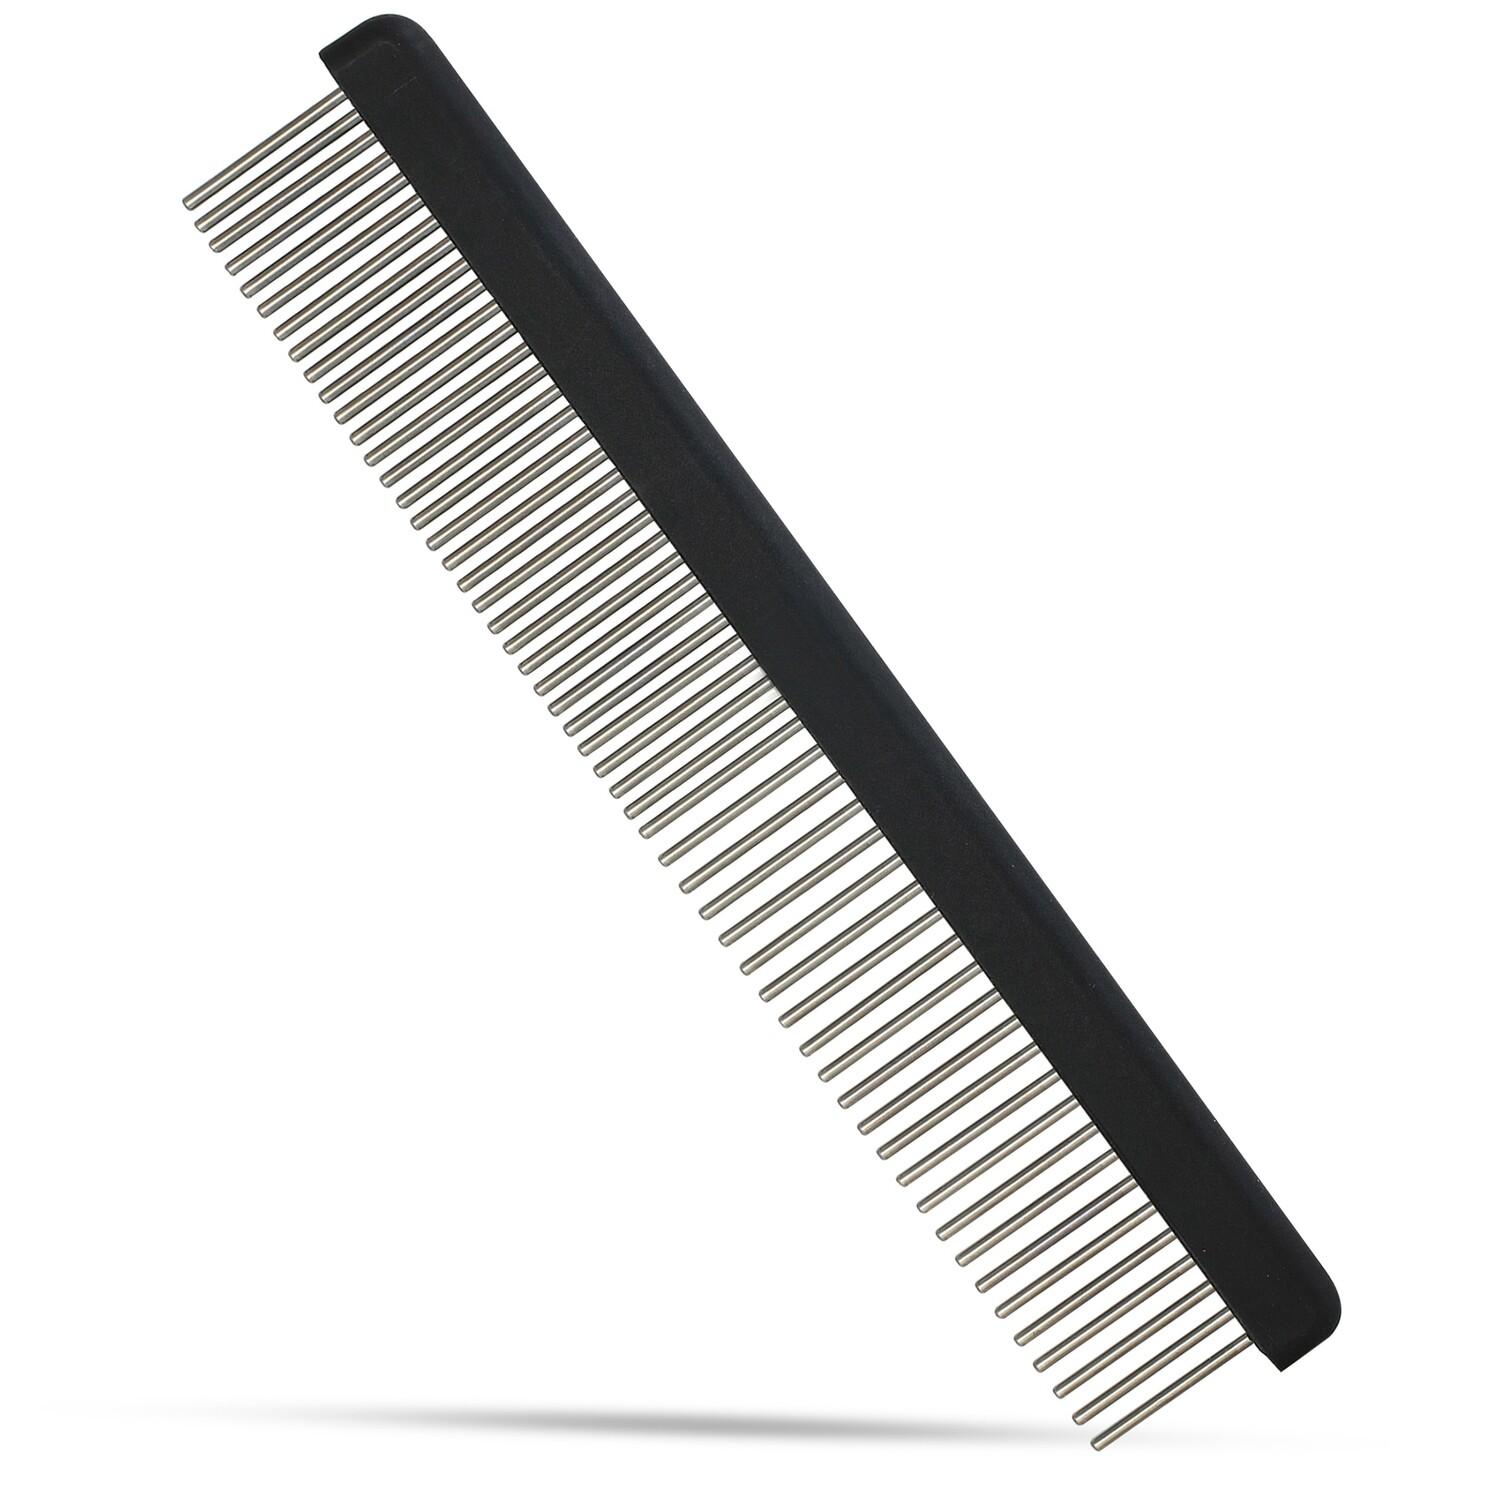 Rotating Teeth Comb -Pro Groomer II 1¼ inch